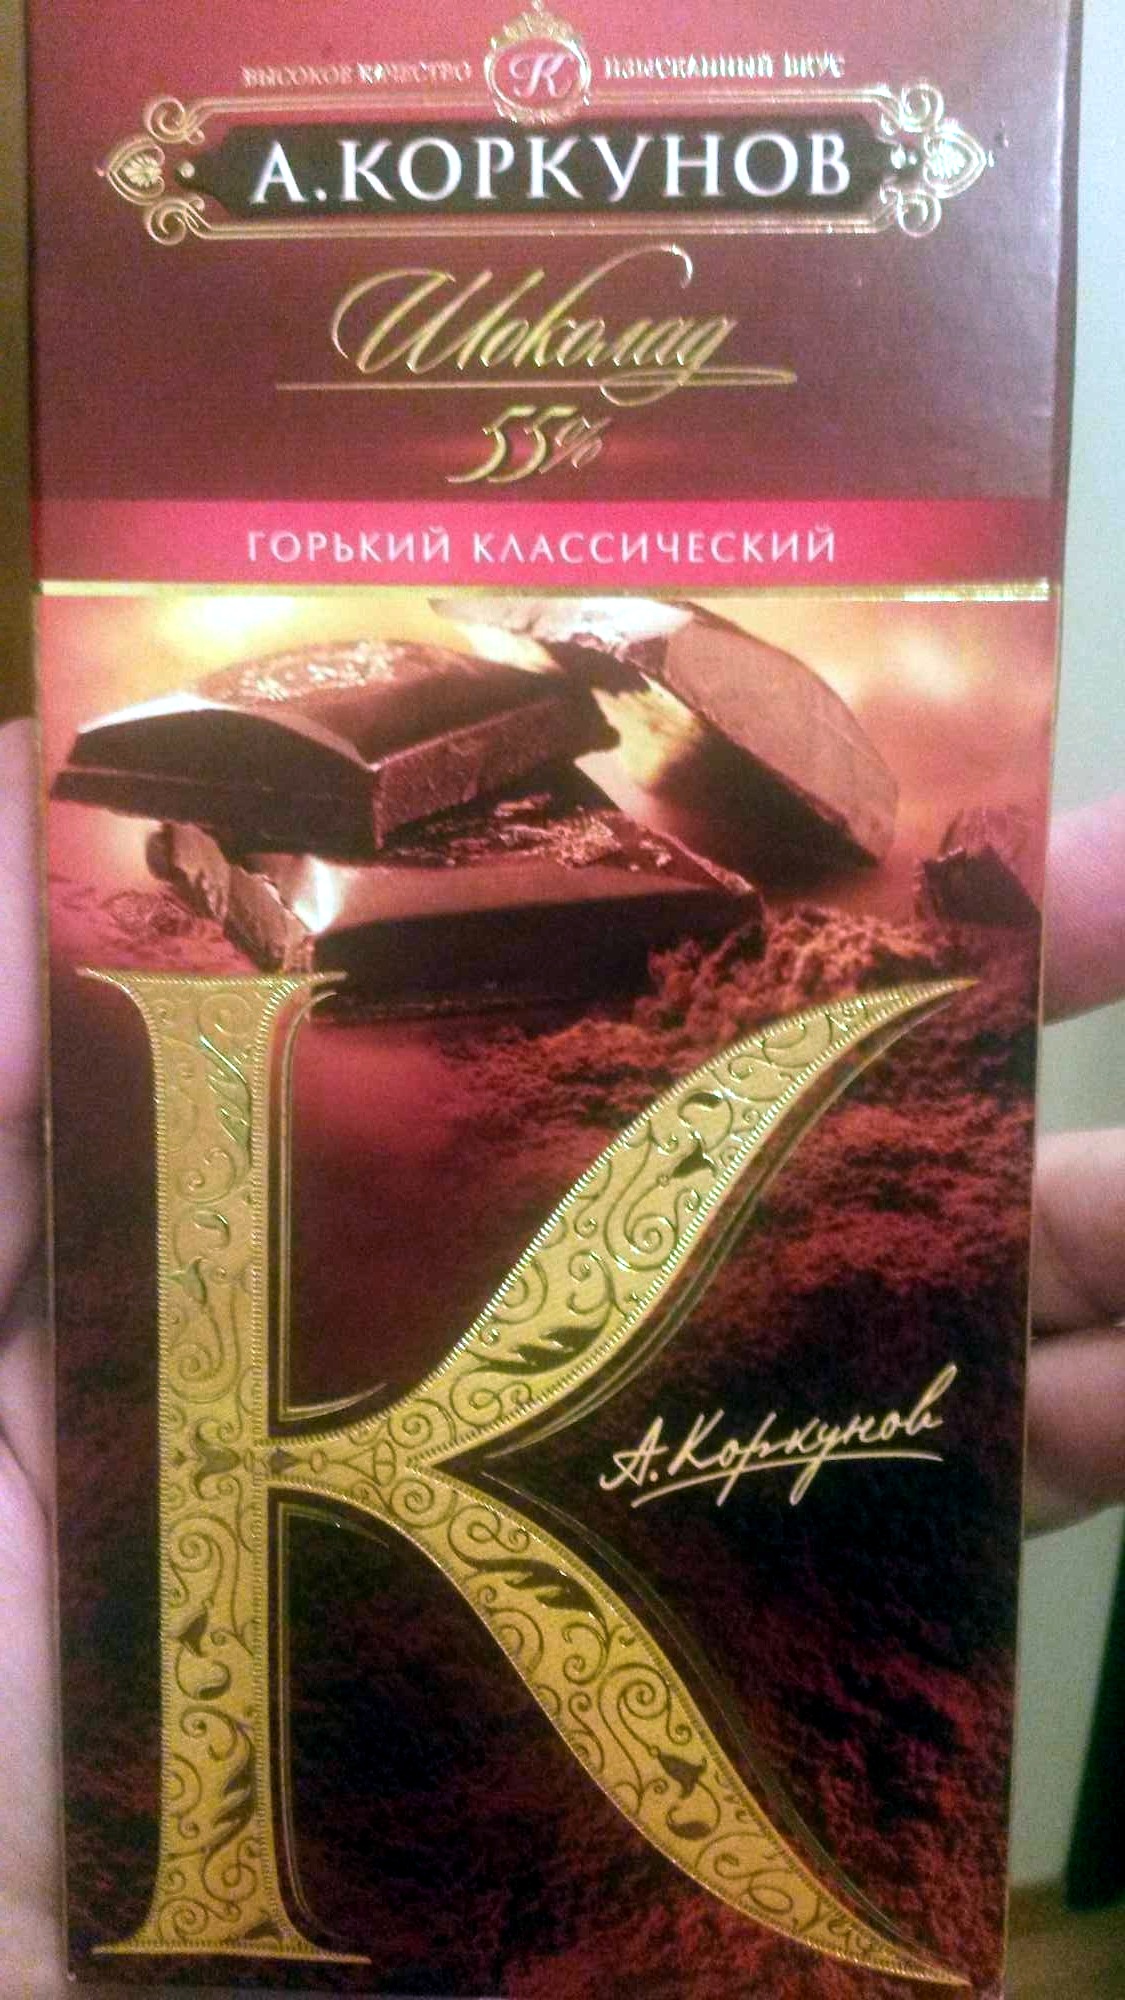 Горький шоколад (55%) - Product - ru